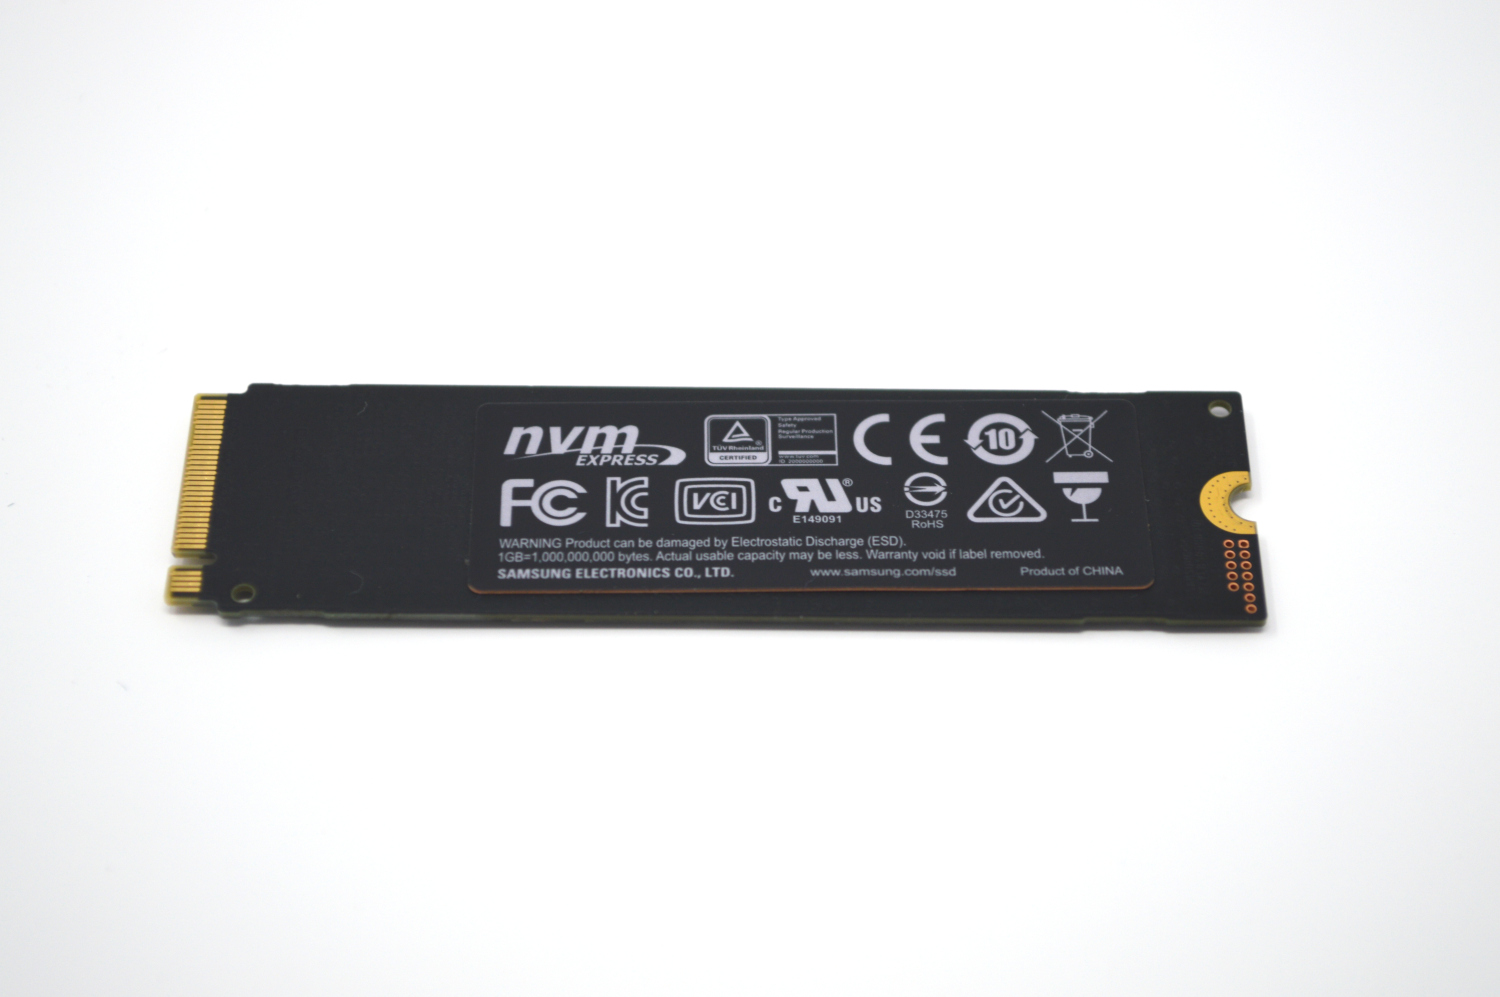 Samsung 970 EVO Plus 250GB SSD Review -